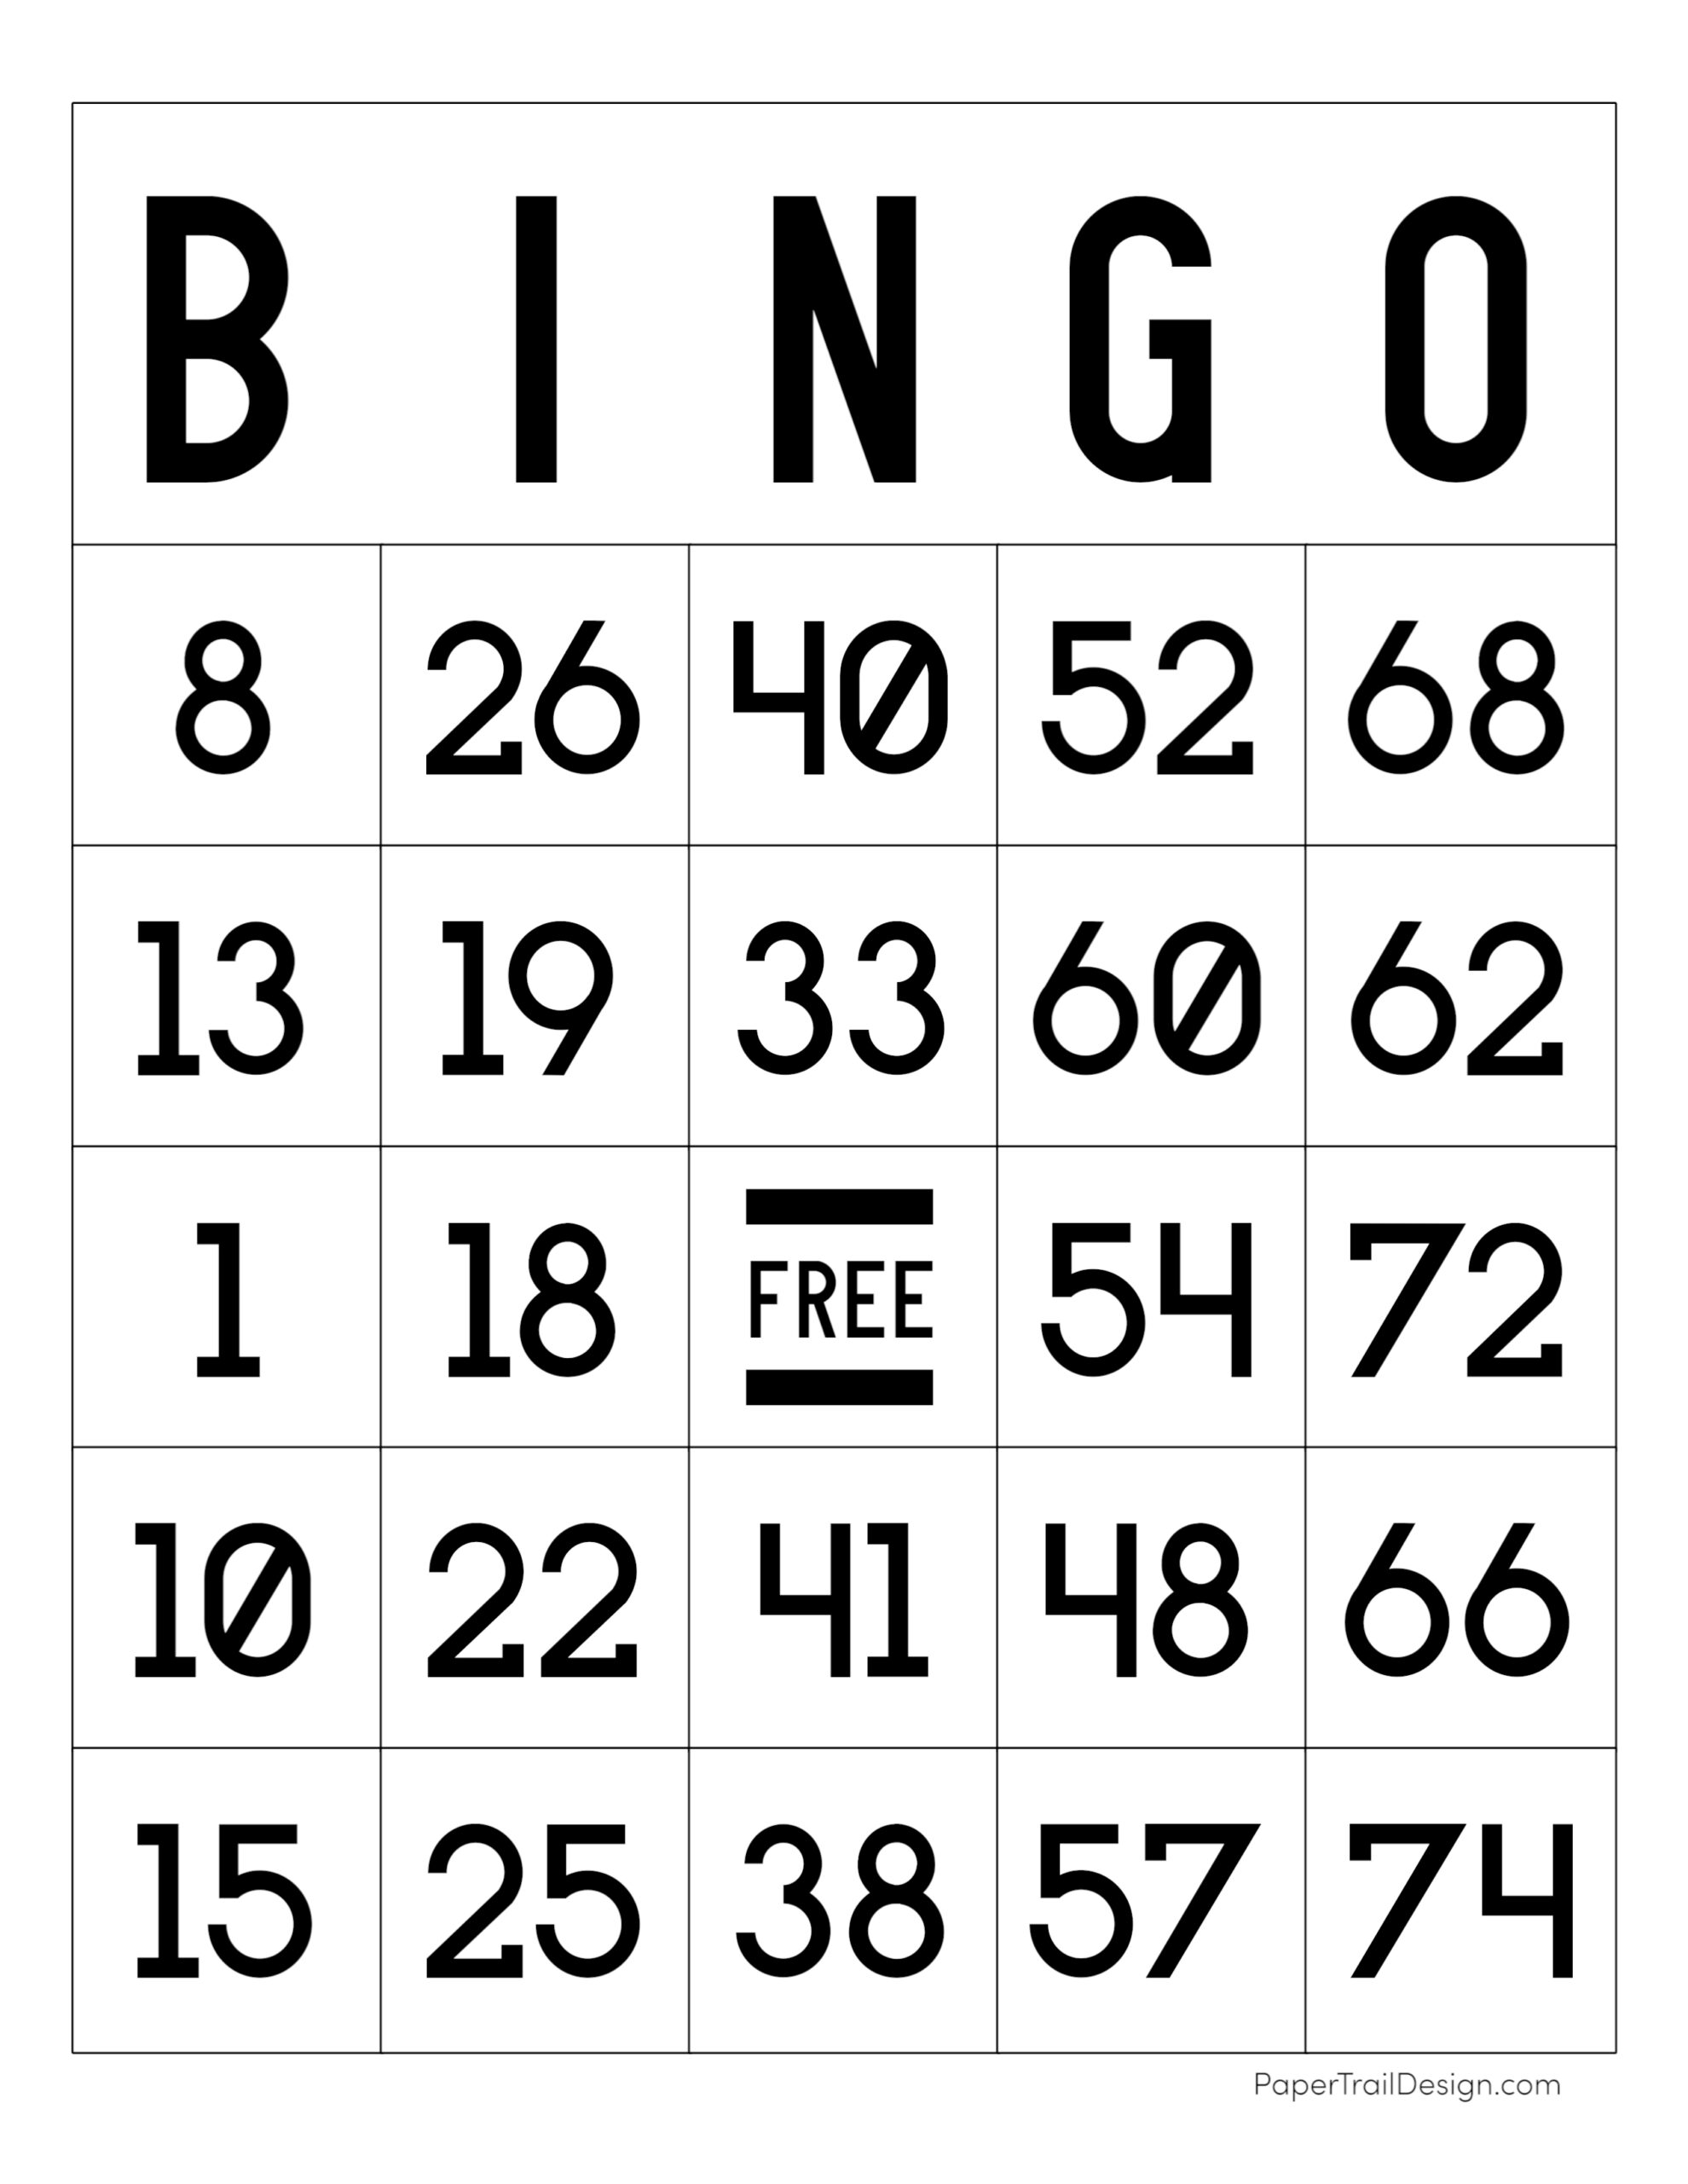 jogo de bingo para ganhar dinheiro